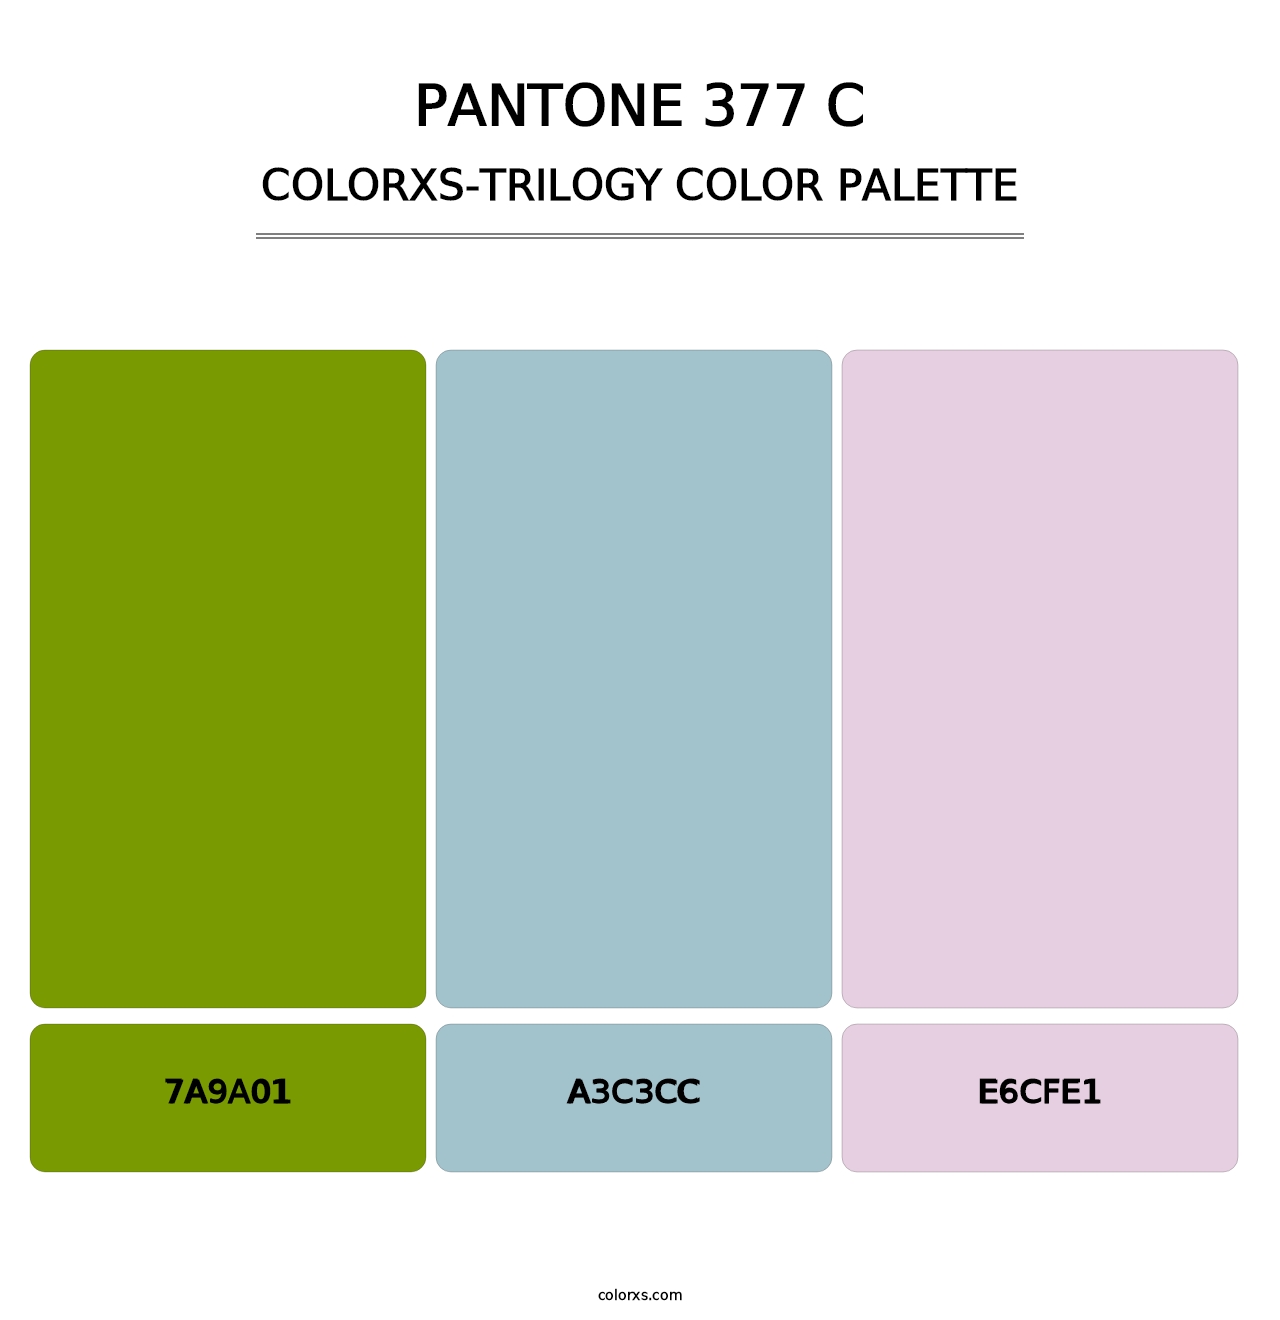 PANTONE 377 C - Colorxs Trilogy Palette